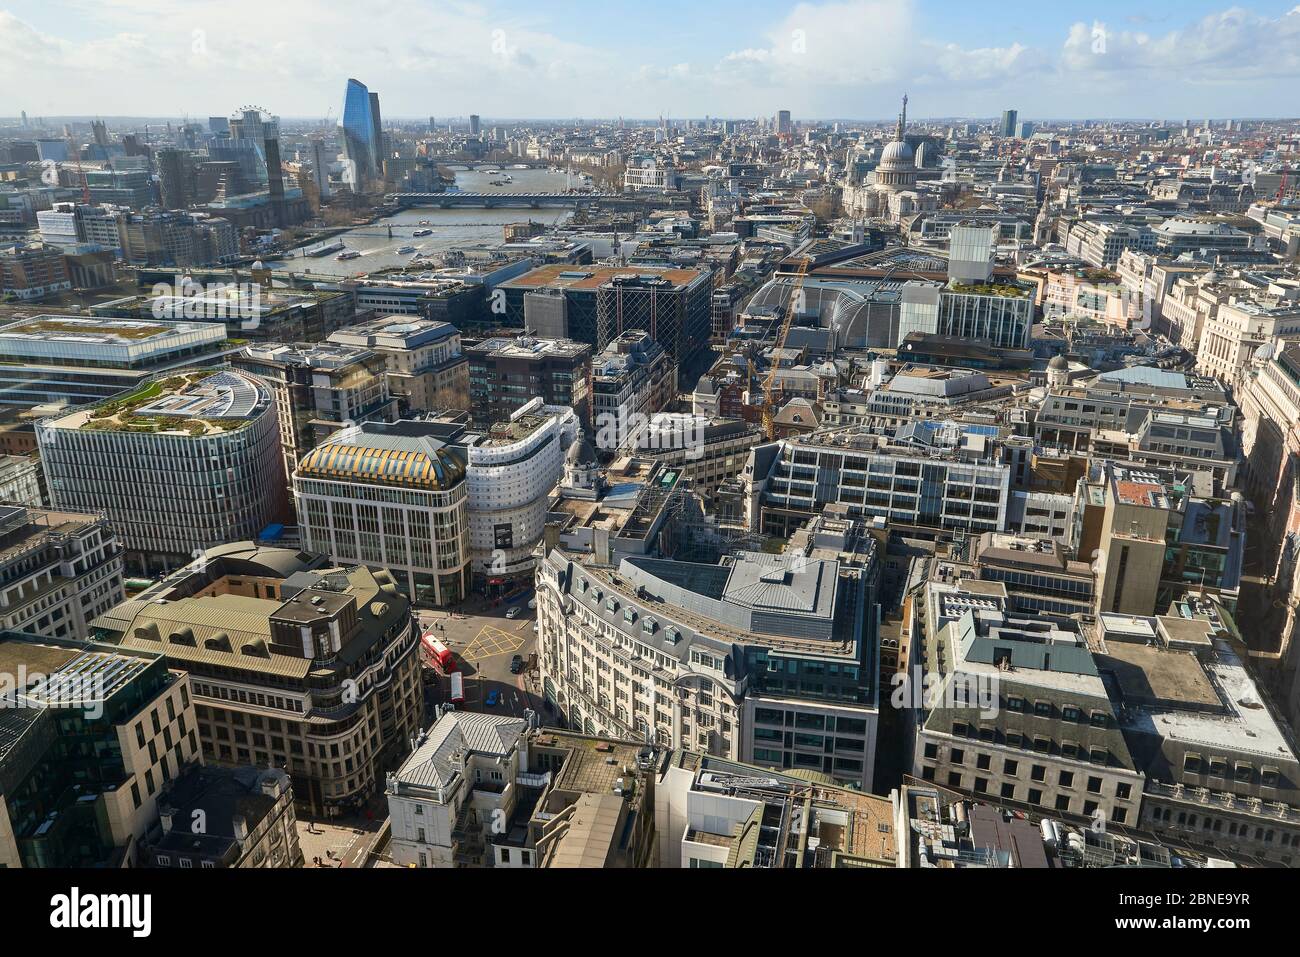 Vista ad alto angolo dello skyline della città di Londra, vista dall'edificio Walkie Talkie. Londra è la capitale del Regno Unito, e la città di Londra è su Foto Stock